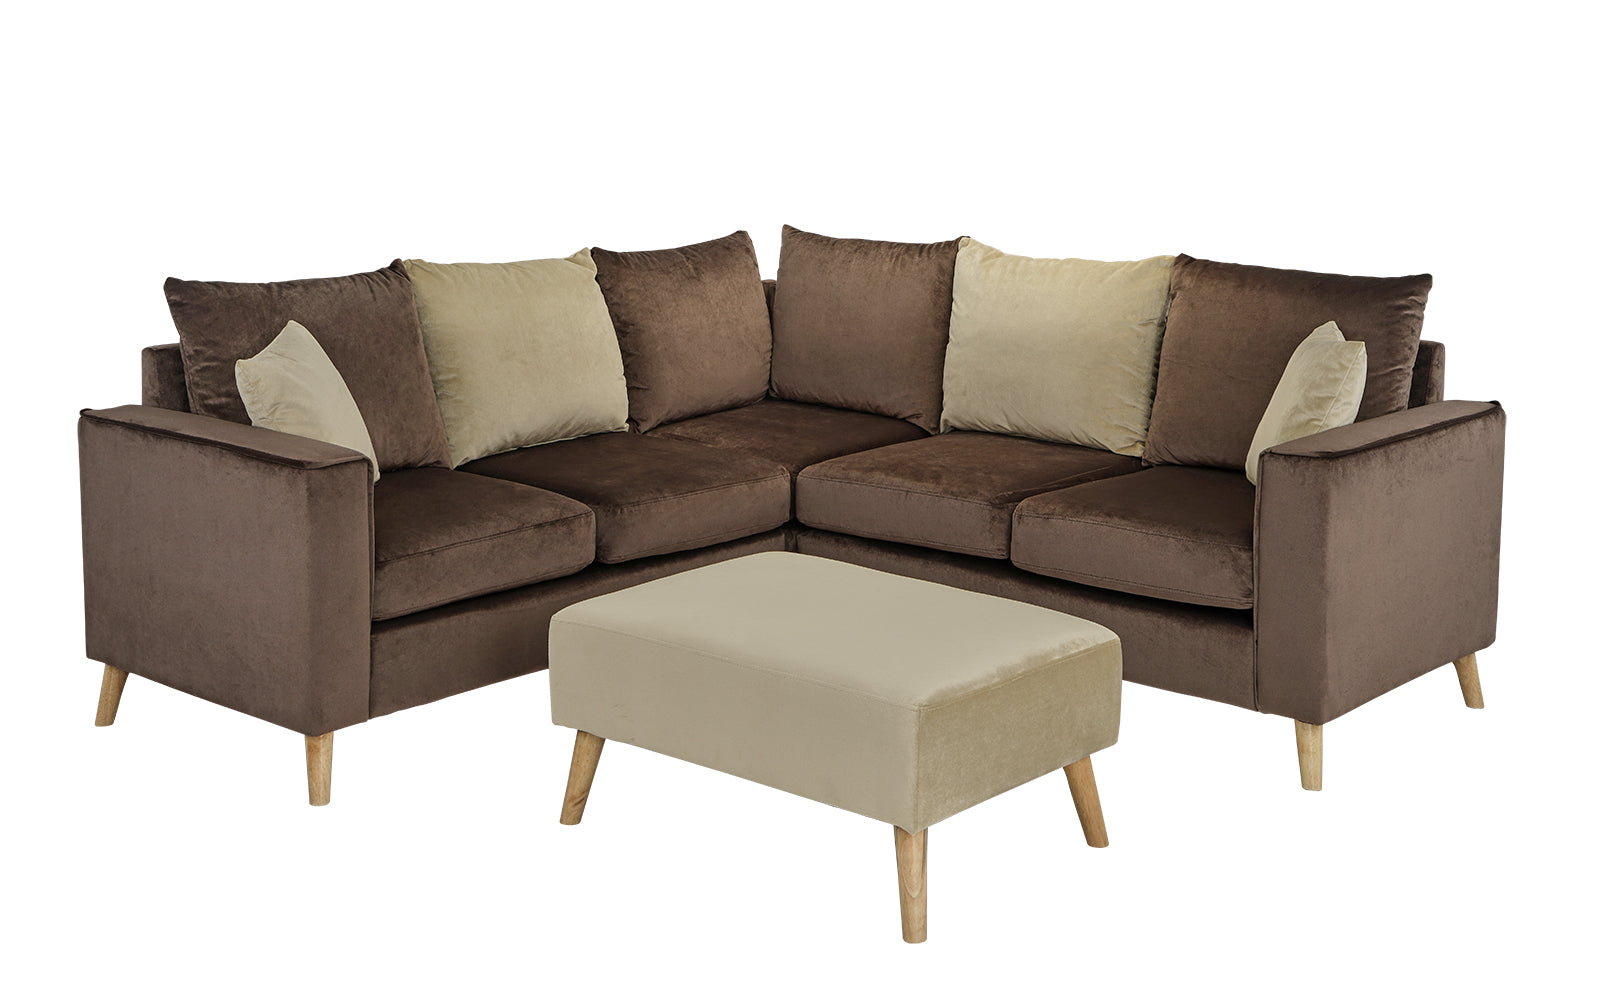 Alanna Small Modern Velvet Sectional Sofa with Ottoman